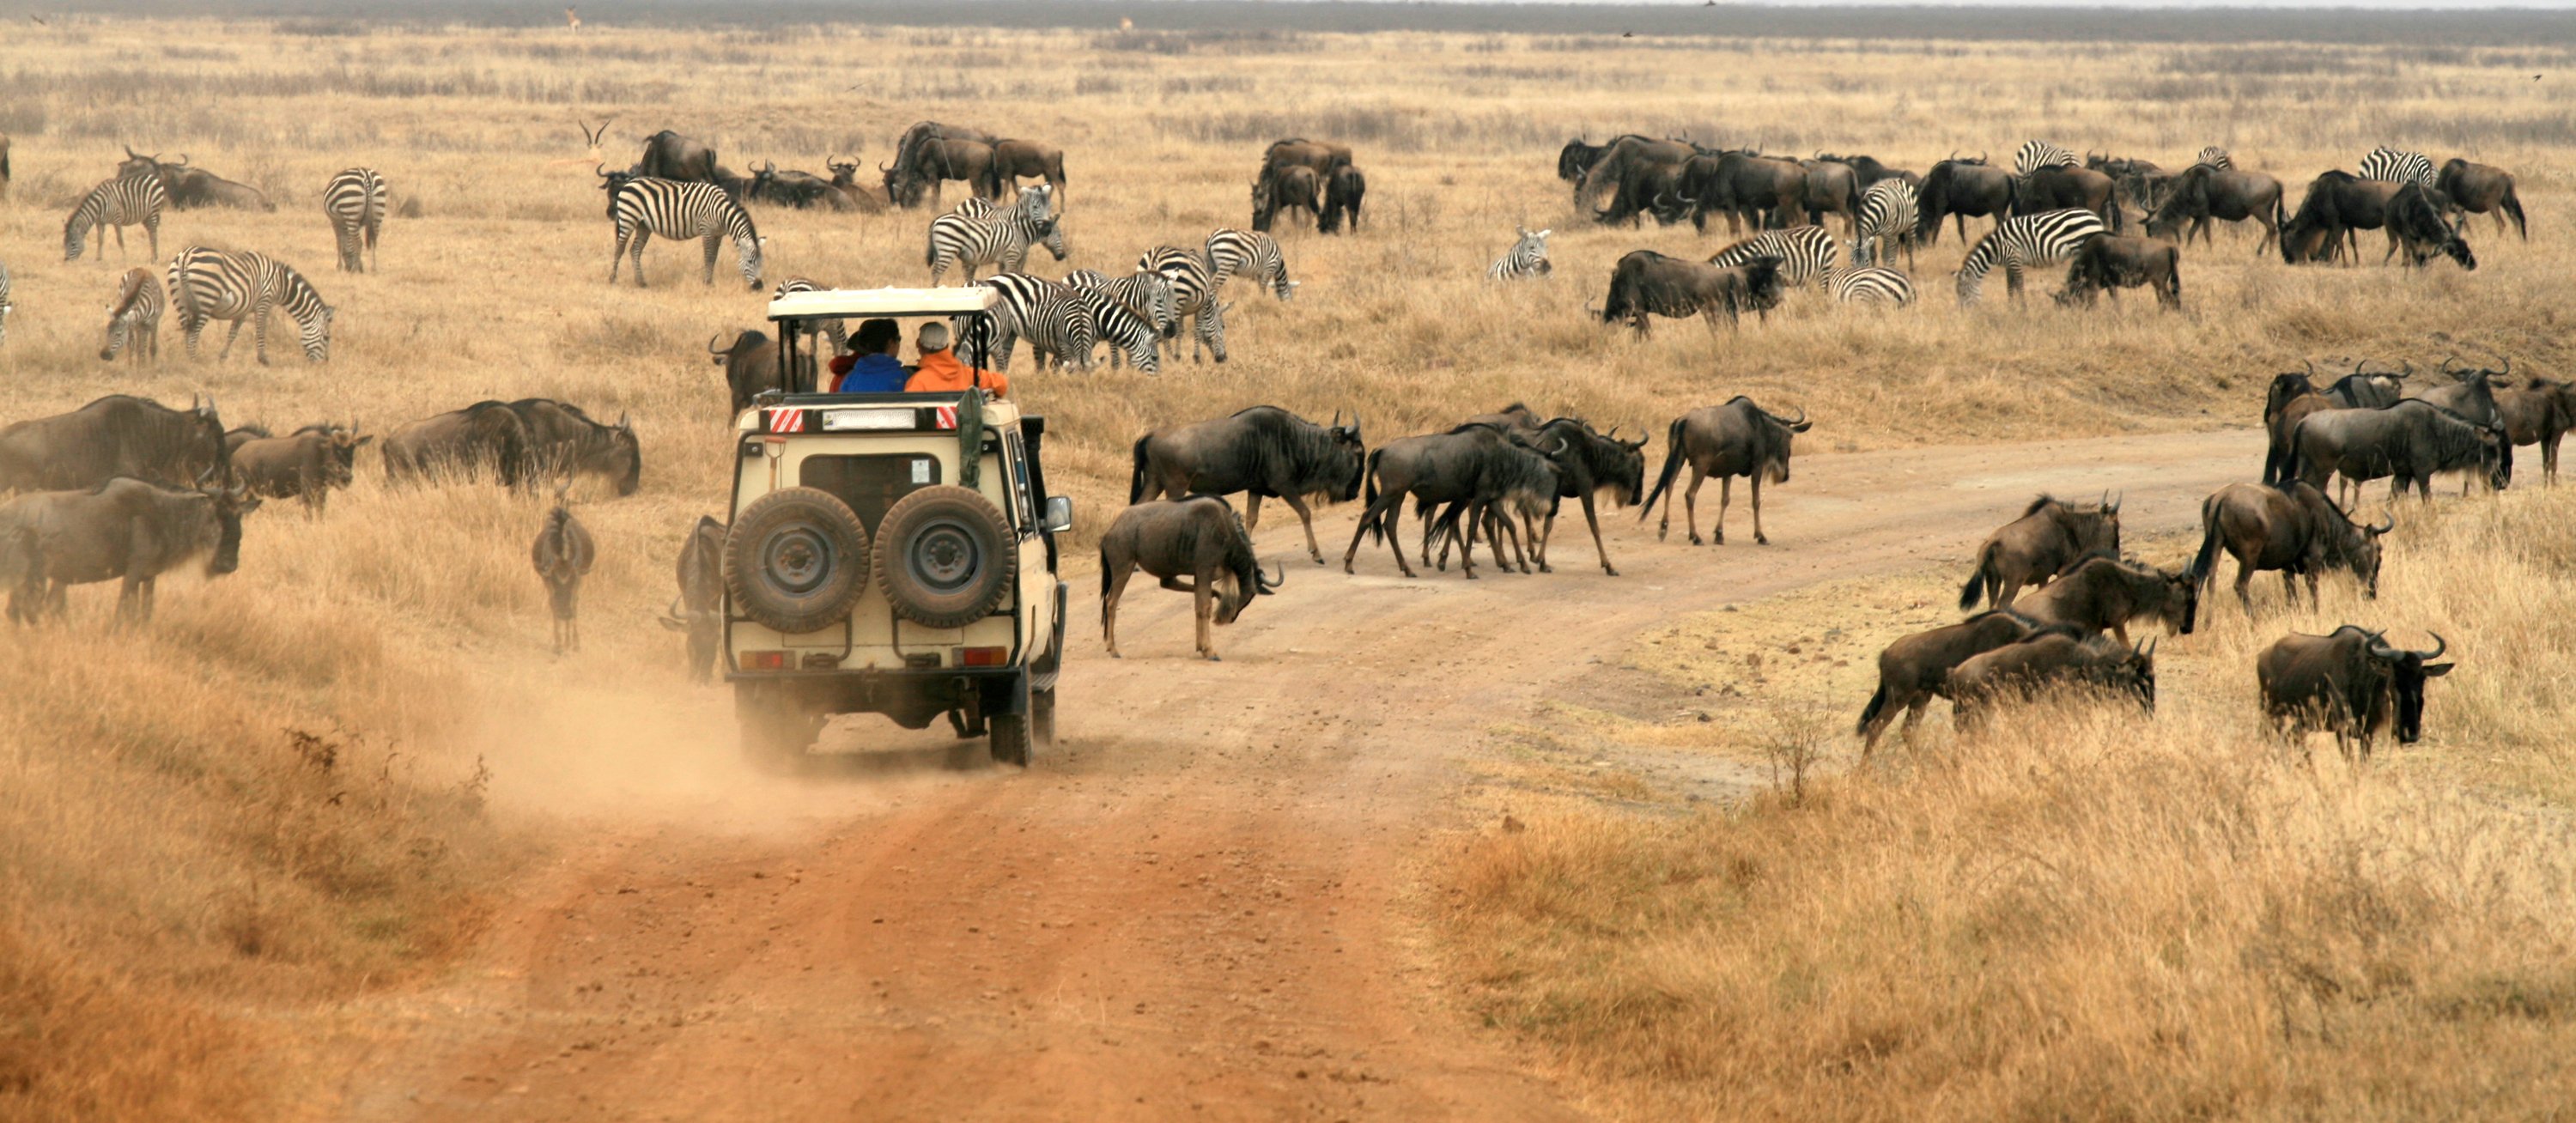 Safari en Ngorongoro, Tanzania, África